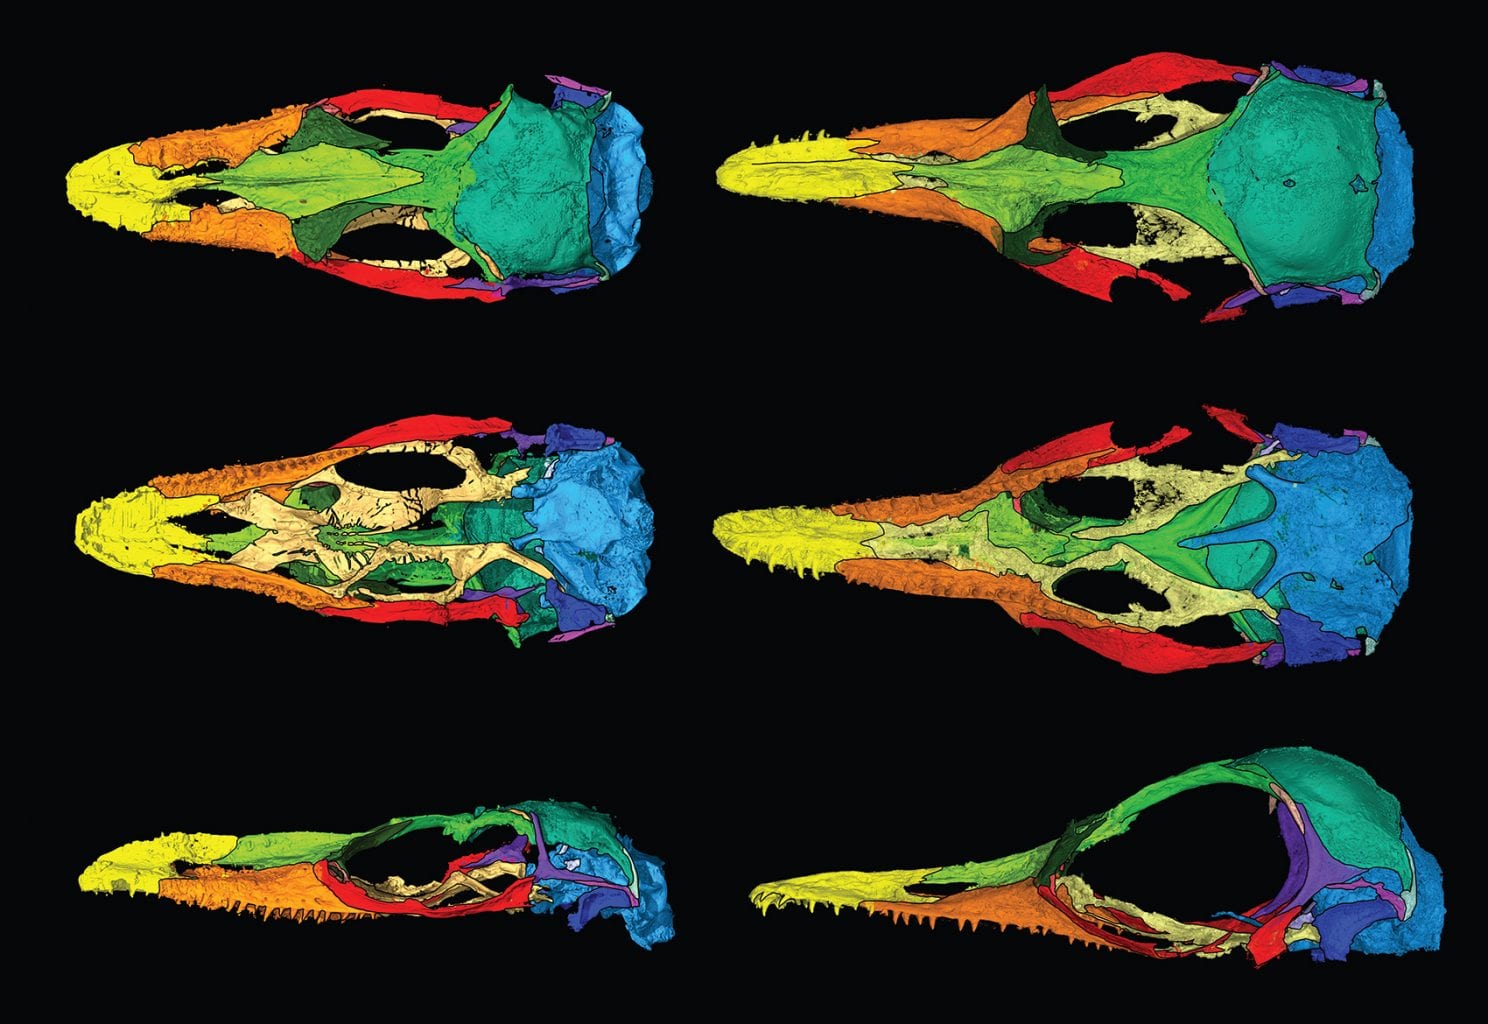 Цифровая изоляция каждой кости обоих новых видов ящериц - O. naga слева и O. khaungraae справа. Предоставлено: ЭДВАРД СТЕНЛИ ИЗ МУЗЕЯ ФЛОРИДЫ, АДАПТАЦИЯ ИЗ СОВРЕМЕННОЙ БИОЛОГИИ. КТ-сканирование, финансируемое ФОНДОМ PERETTI MUSEUM FOUNDATION